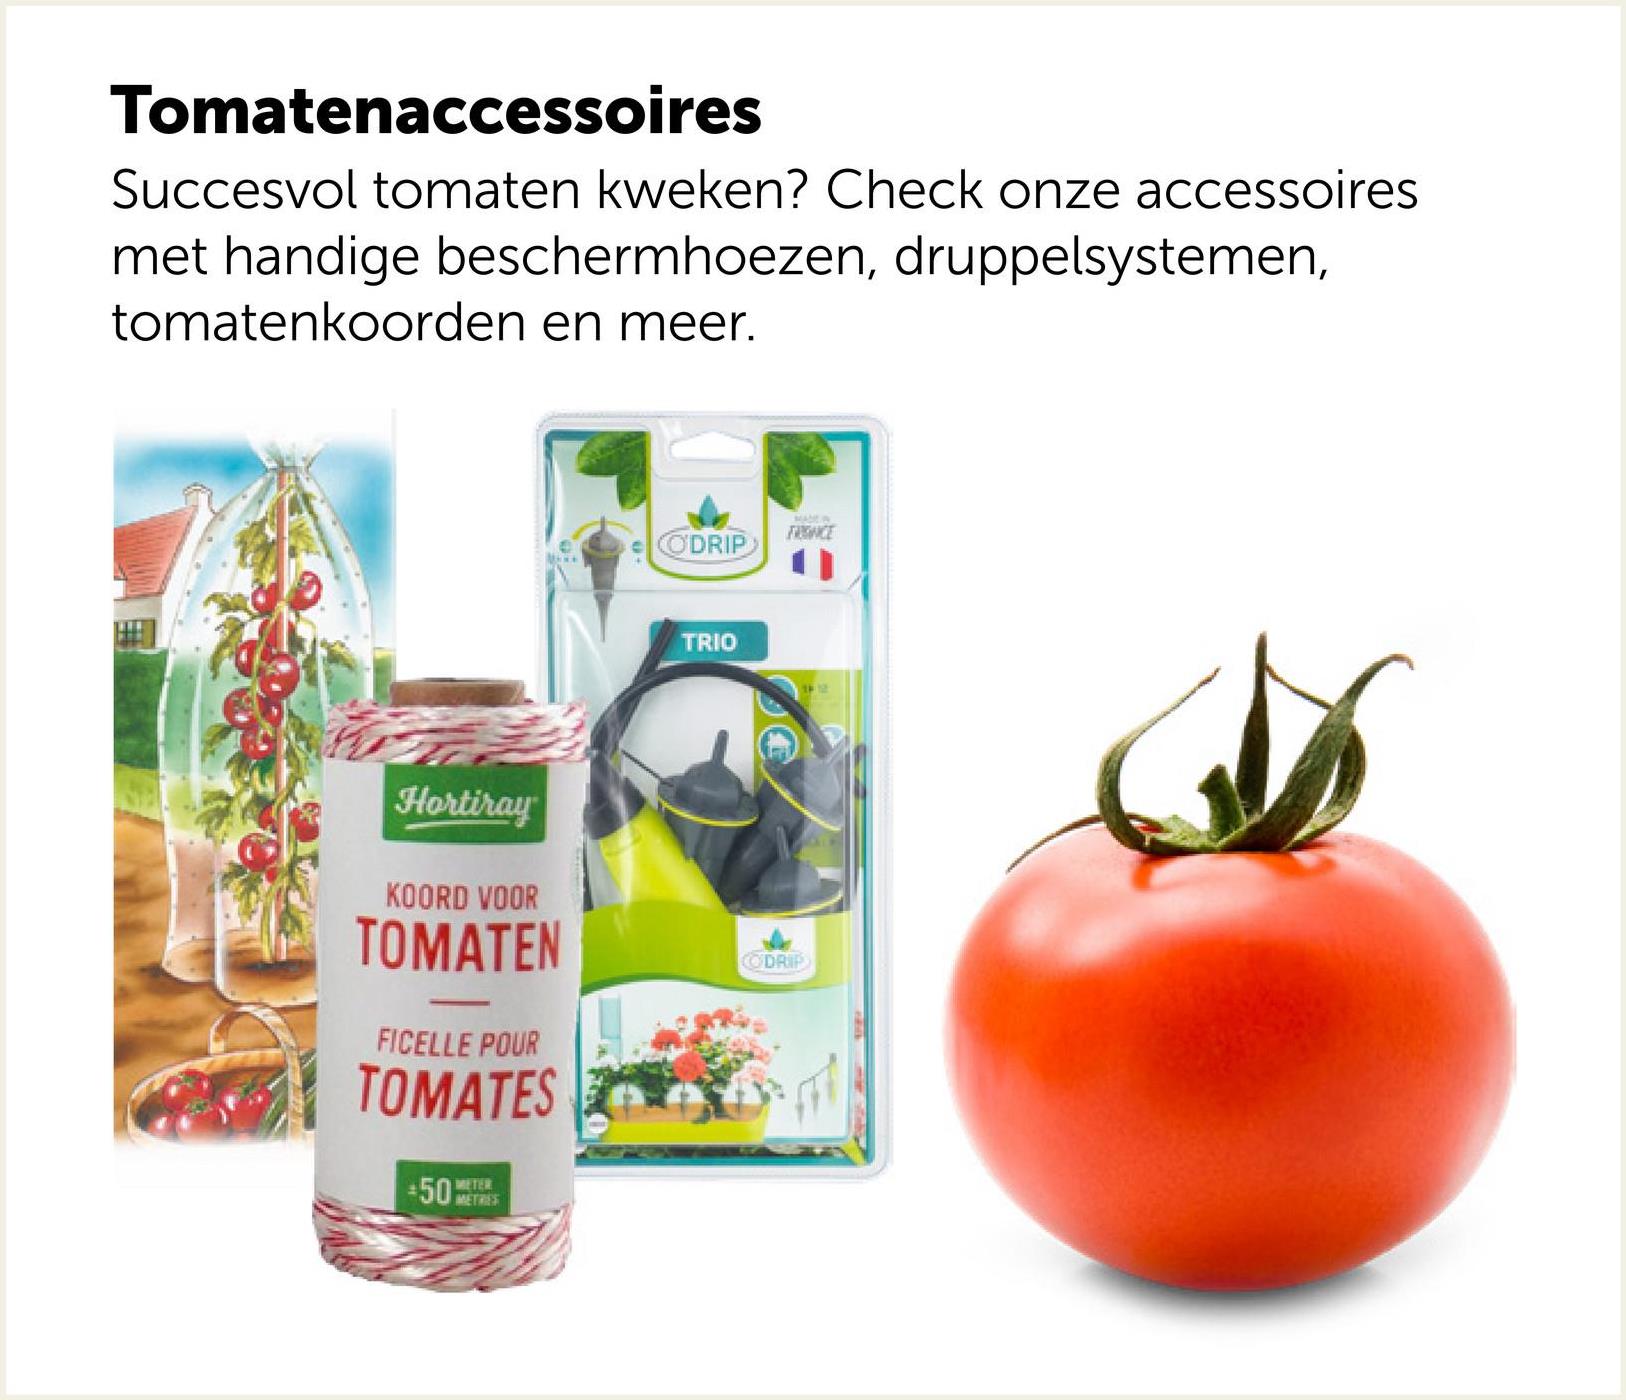 Tomatenaccessoires
Succesvol tomaten kweken? Check onze accessoires
met handige beschermhoezen, druppelsystemen,
tomatenkoorden en meer.
ODRIP
FRIENCE
TRIO
Hortiray
KOORD VOOR
TOMATEN
FICELLE POUR
TOMATES
METER
50 METRES
CODRIP